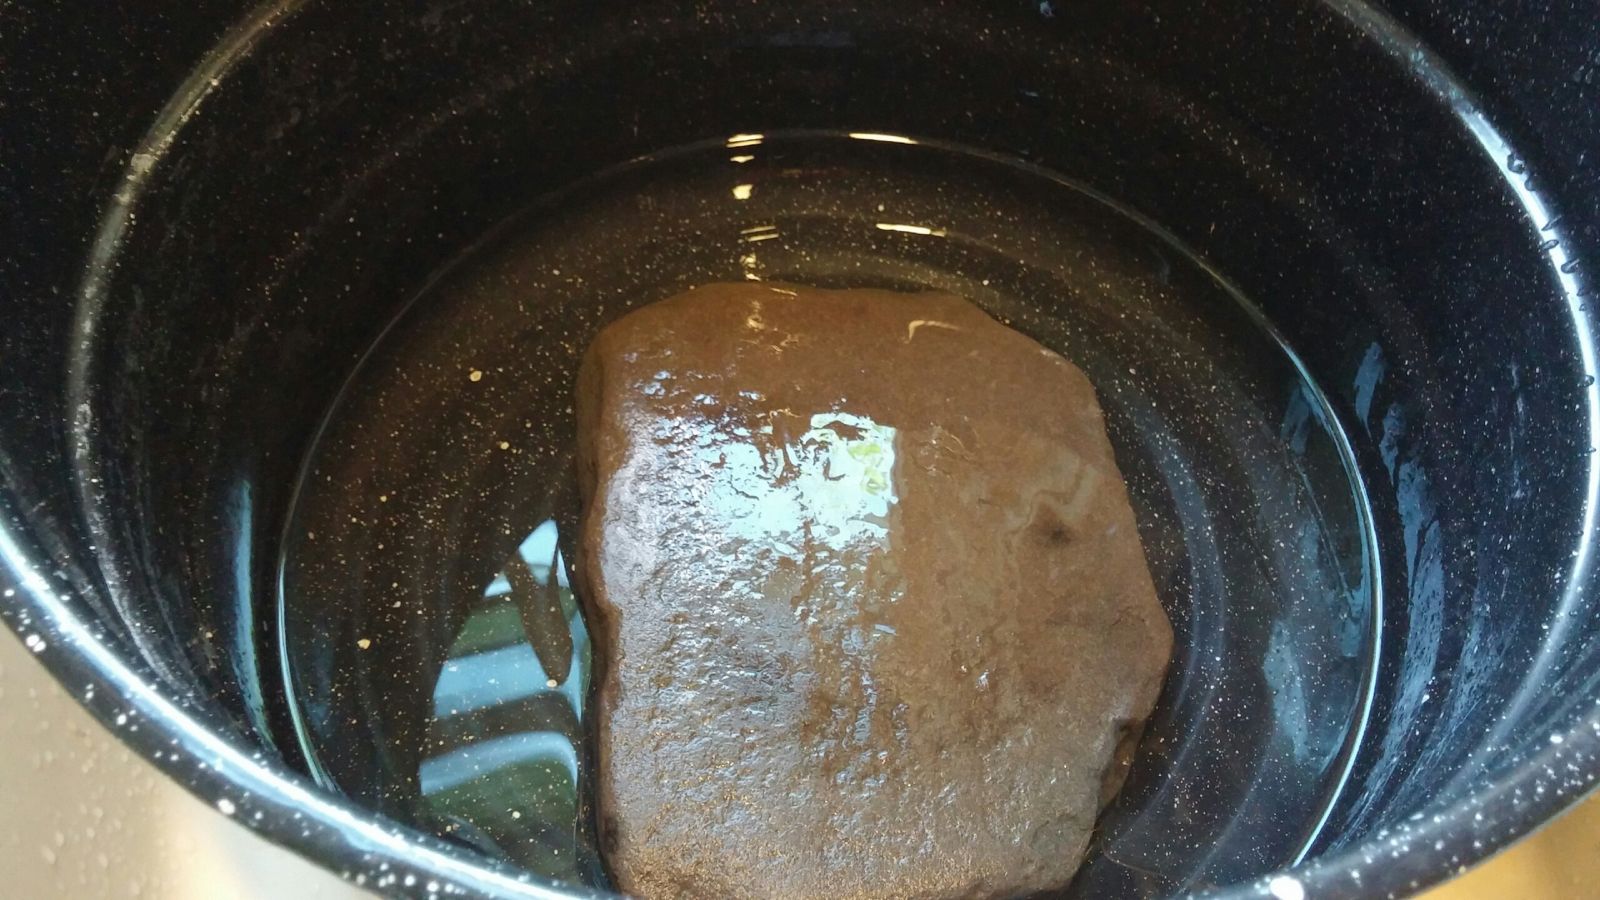 hydrosol rock in pot.jpg